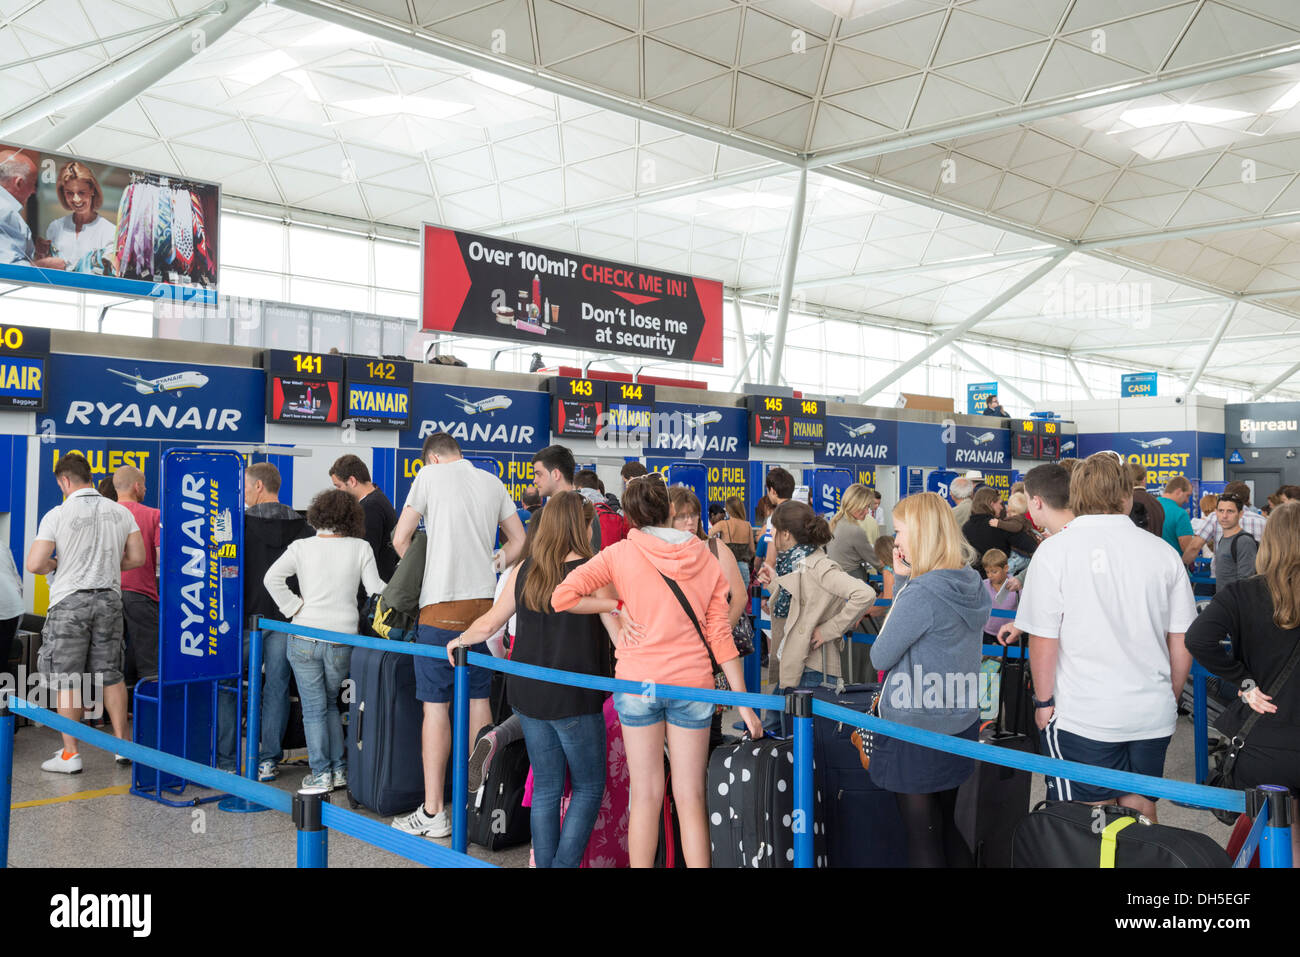 Ryanair check in Banque de photographies et d'images à haute résolution -  Alamy